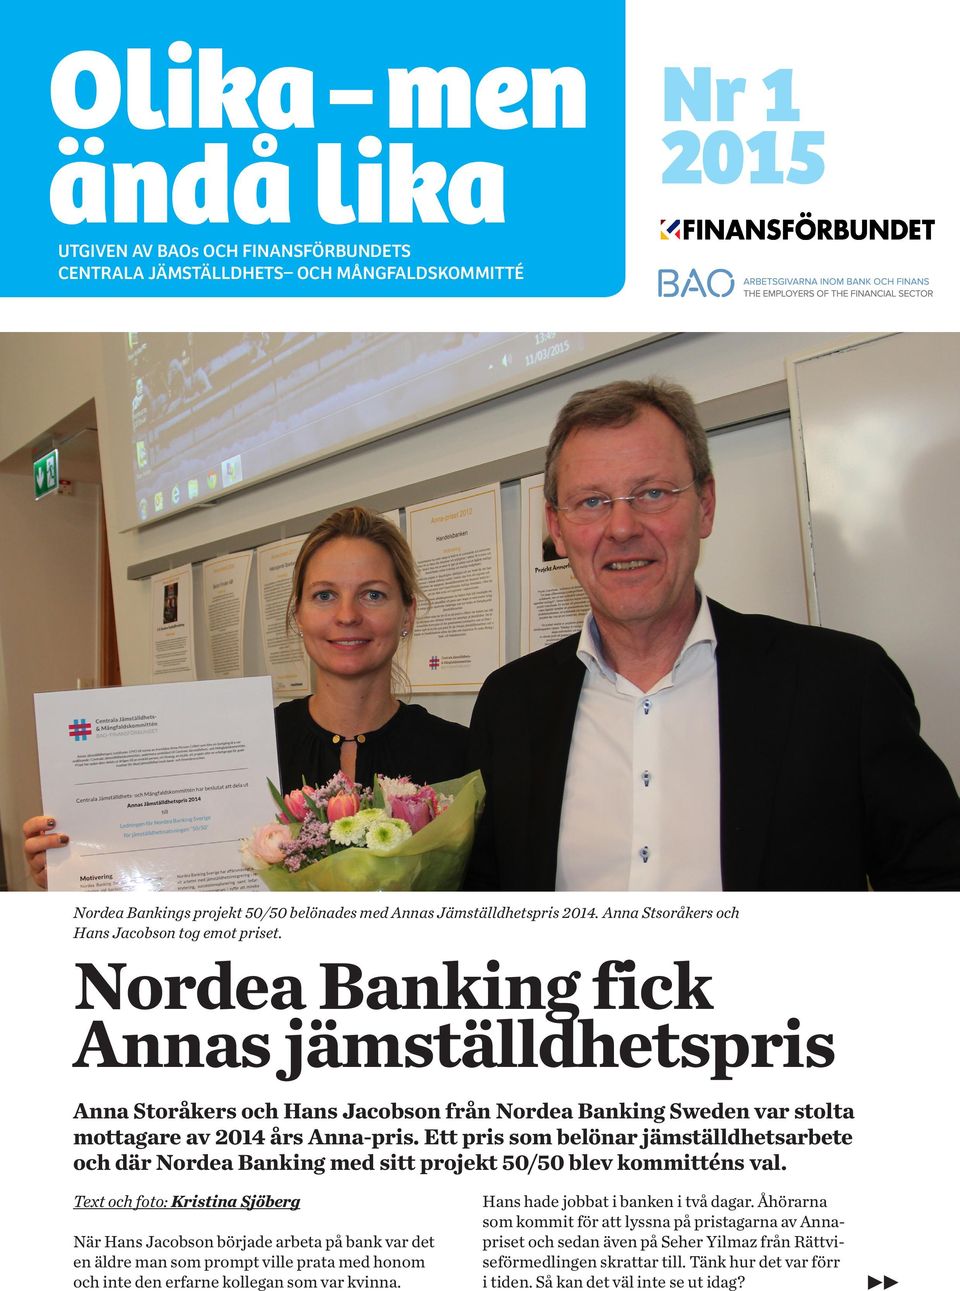 Ett pris som belönar jämställdhetsarbete och där Nordea Banking med sitt projekt 50/50 blev kommitténs val.